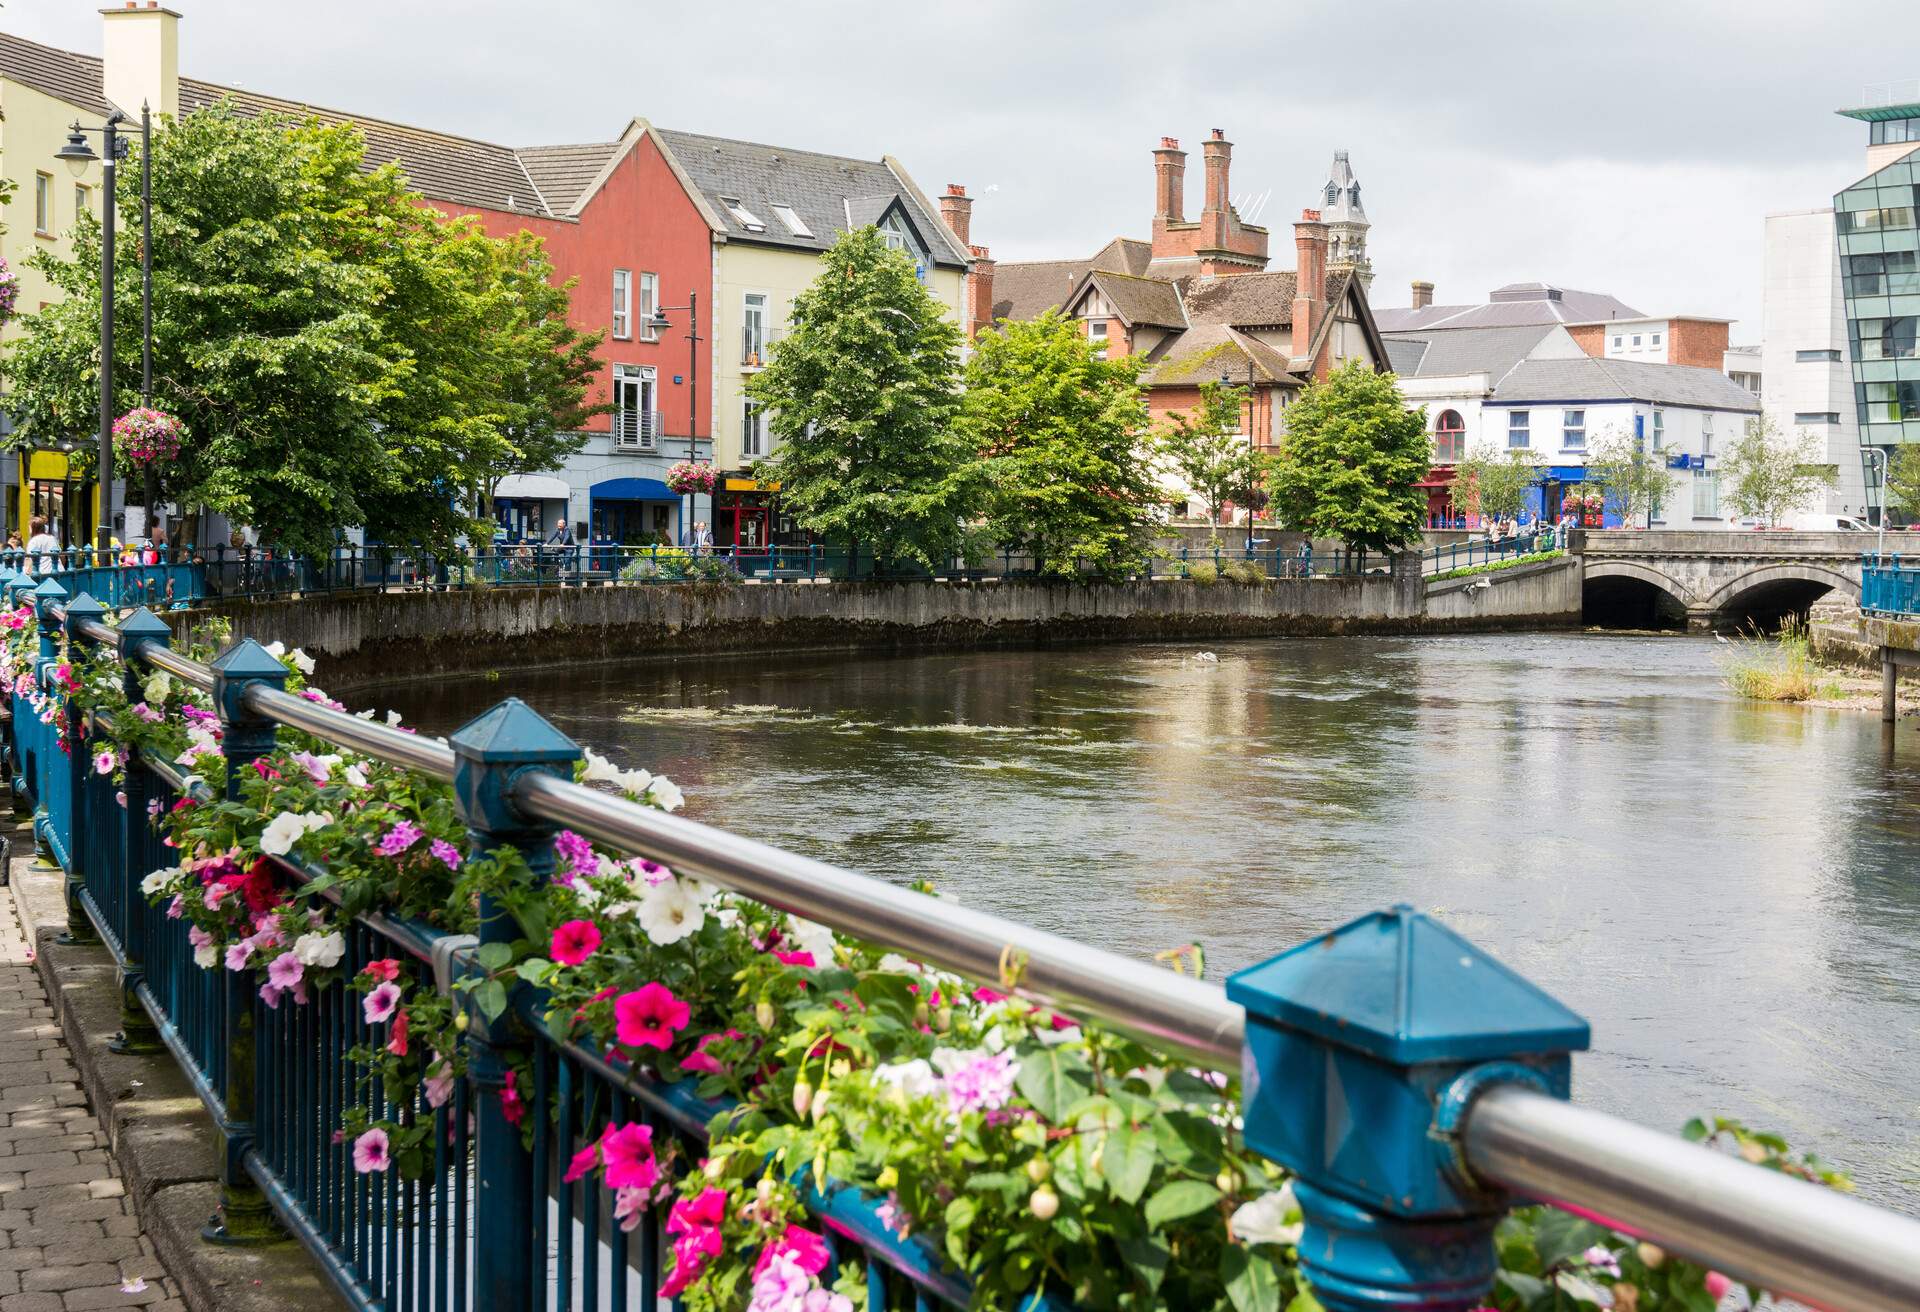 Landascapes of Ireland. Sligo city